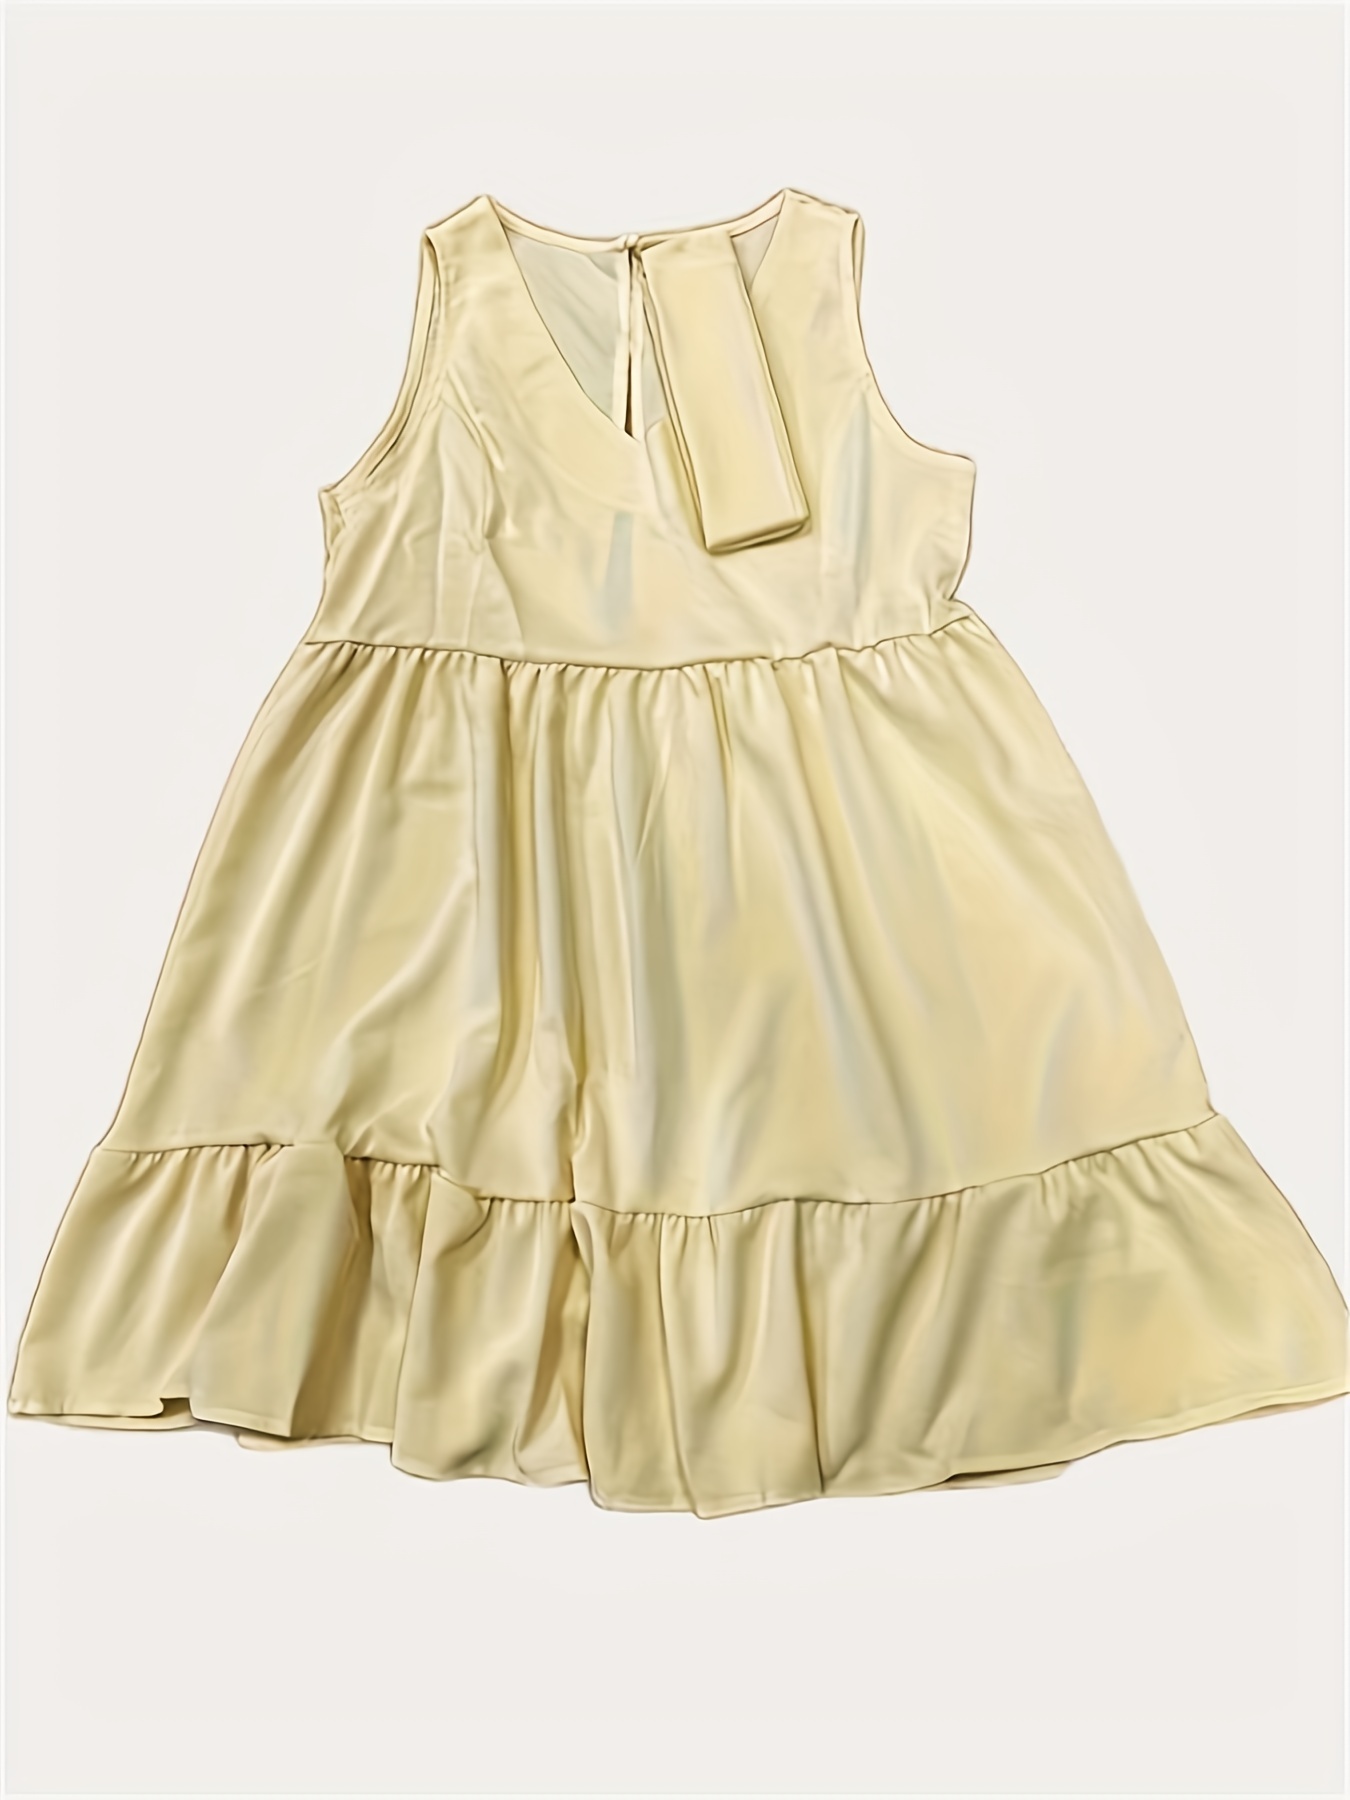 Long Cotton Dress Gold Dress Dress for Women Summer Dress Comfy